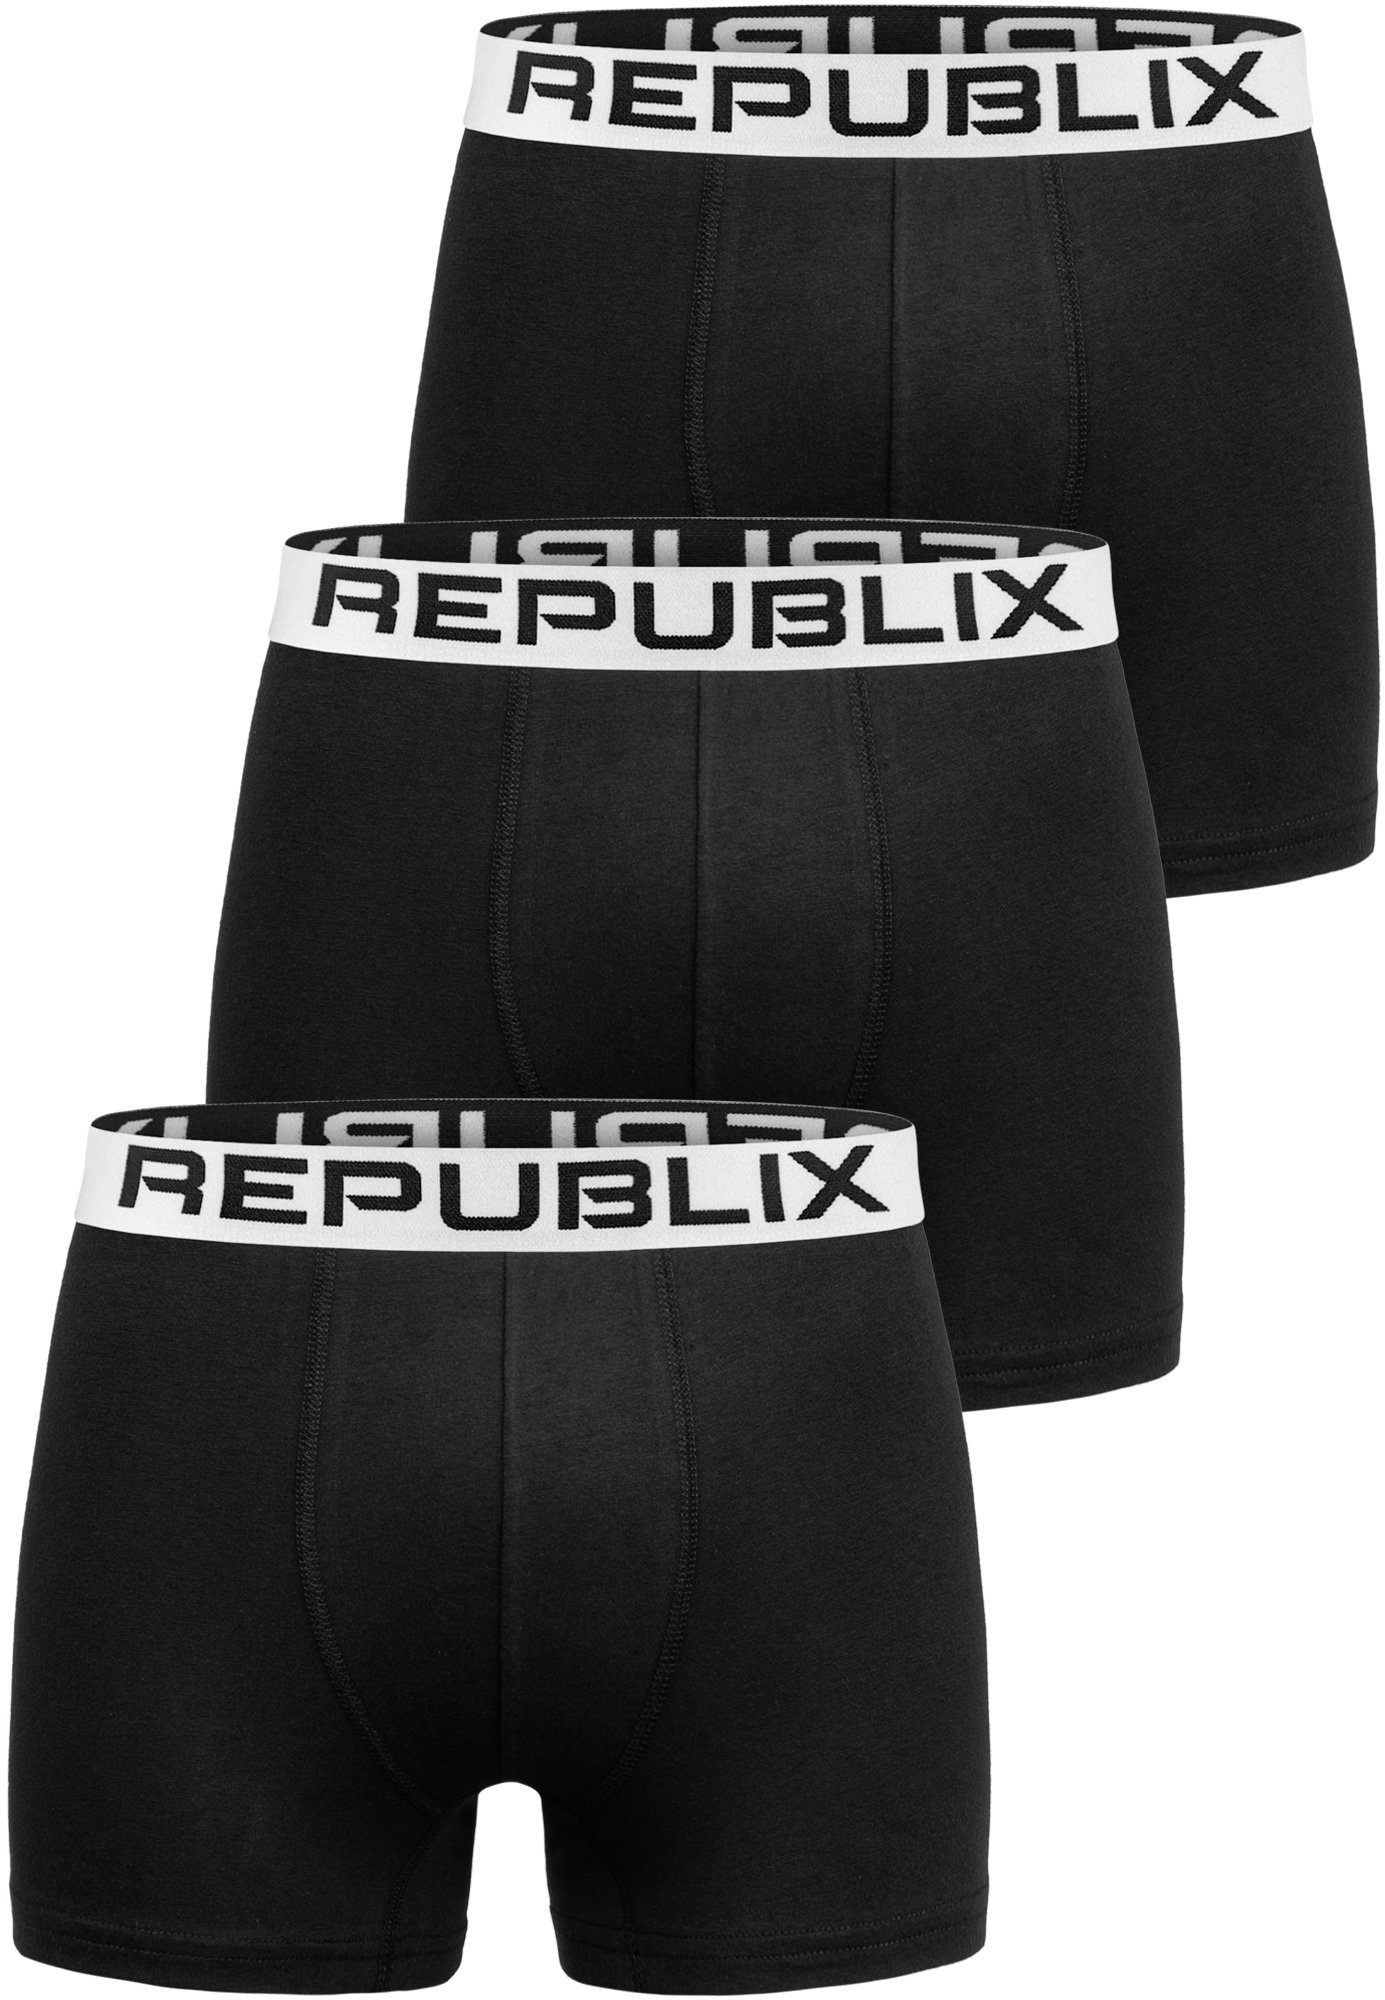 (3er-Pack) Schwarz/Weiß Männer Unterwäsche Baumwolle Herren DON REPUBLIX Boxershorts Unterhose